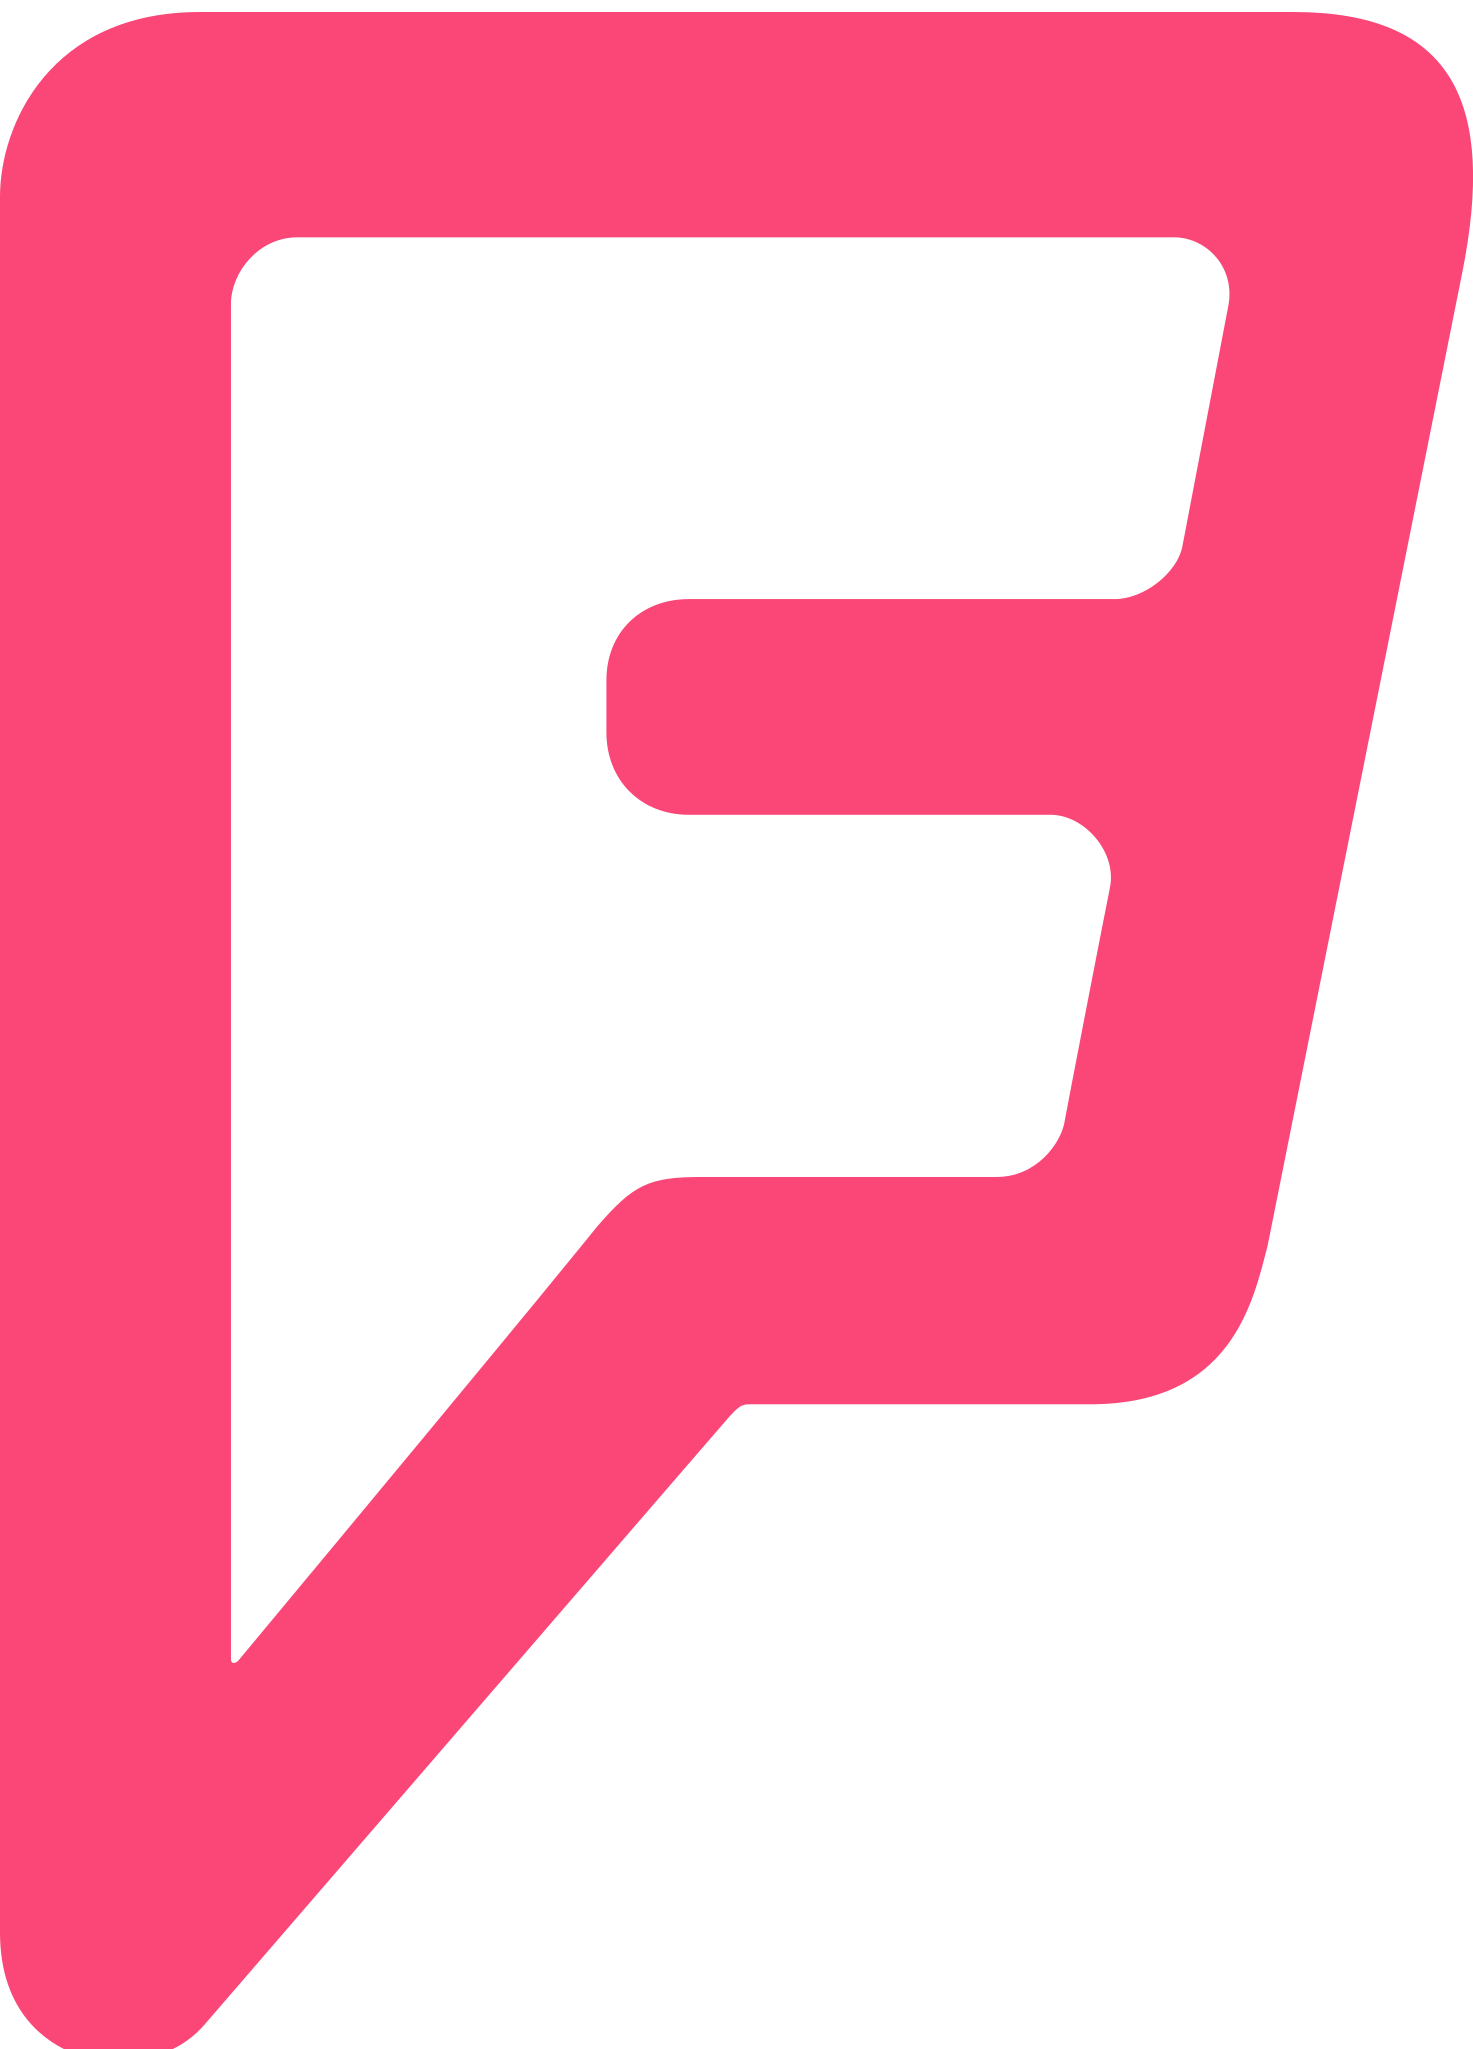 File:Foursquare logo.svg - Wikipedia